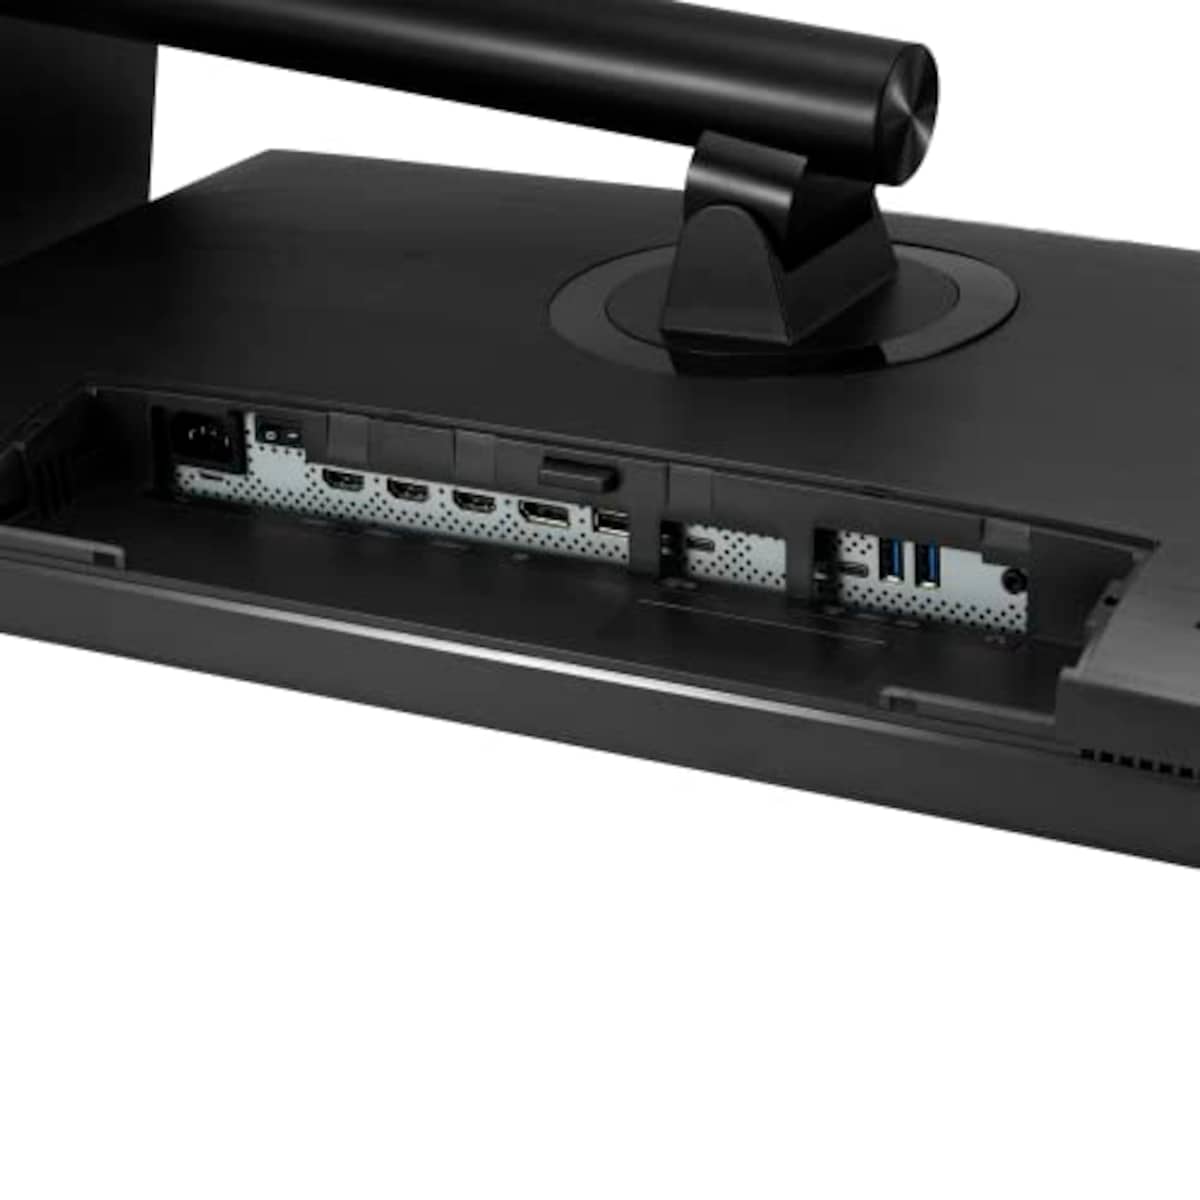  ASUS 4K モニター ProArt PA32UCR-K 32インチ/3年間無輝点保証/ミニLED/IPS/1000 nits/ハードウェアキャリブレーション/ΔE<1/HLG/HDR-10/DCI-P3/USB-C/Calman Ready/国内正規品画像11 